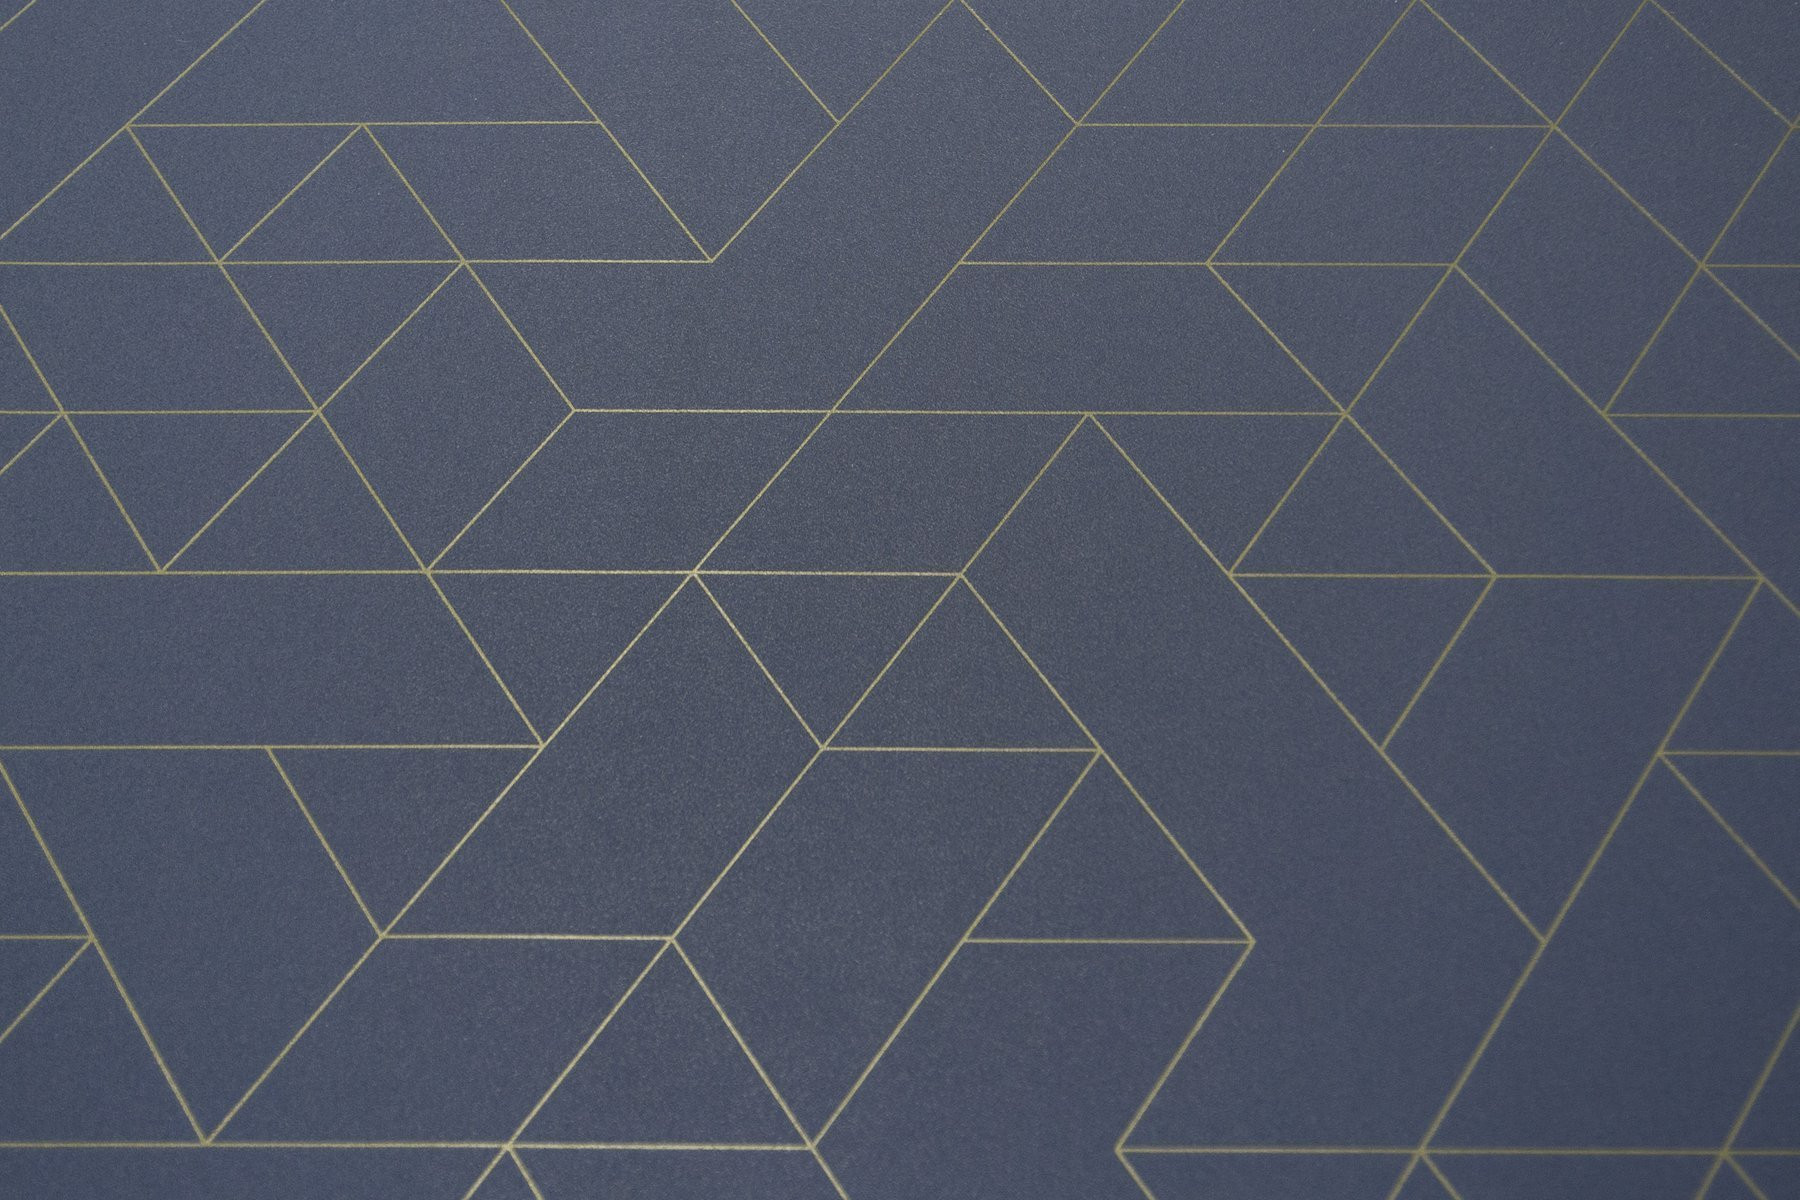 PVC podlaha Colori Jester 578 modrá / zlatá